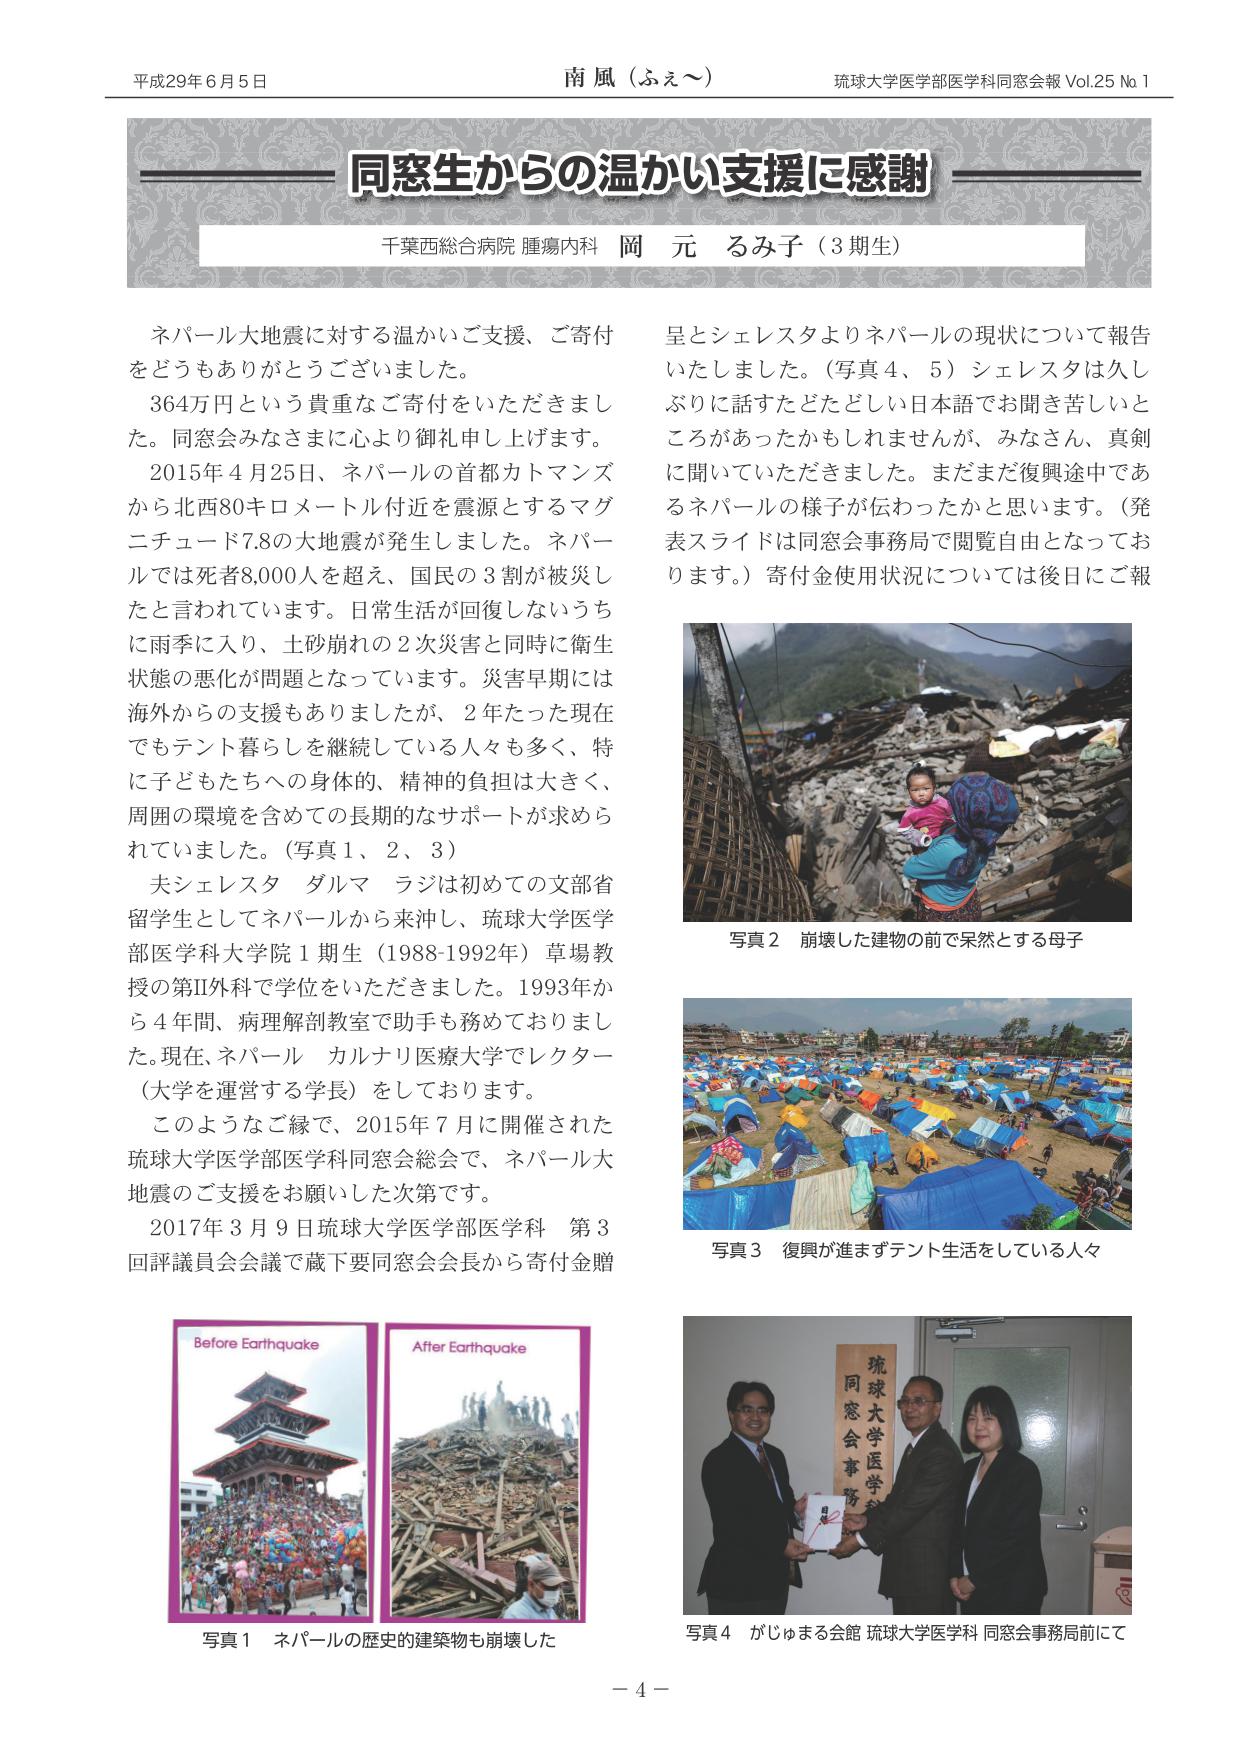 ネパール大地震災害に対する支援の報告(2)